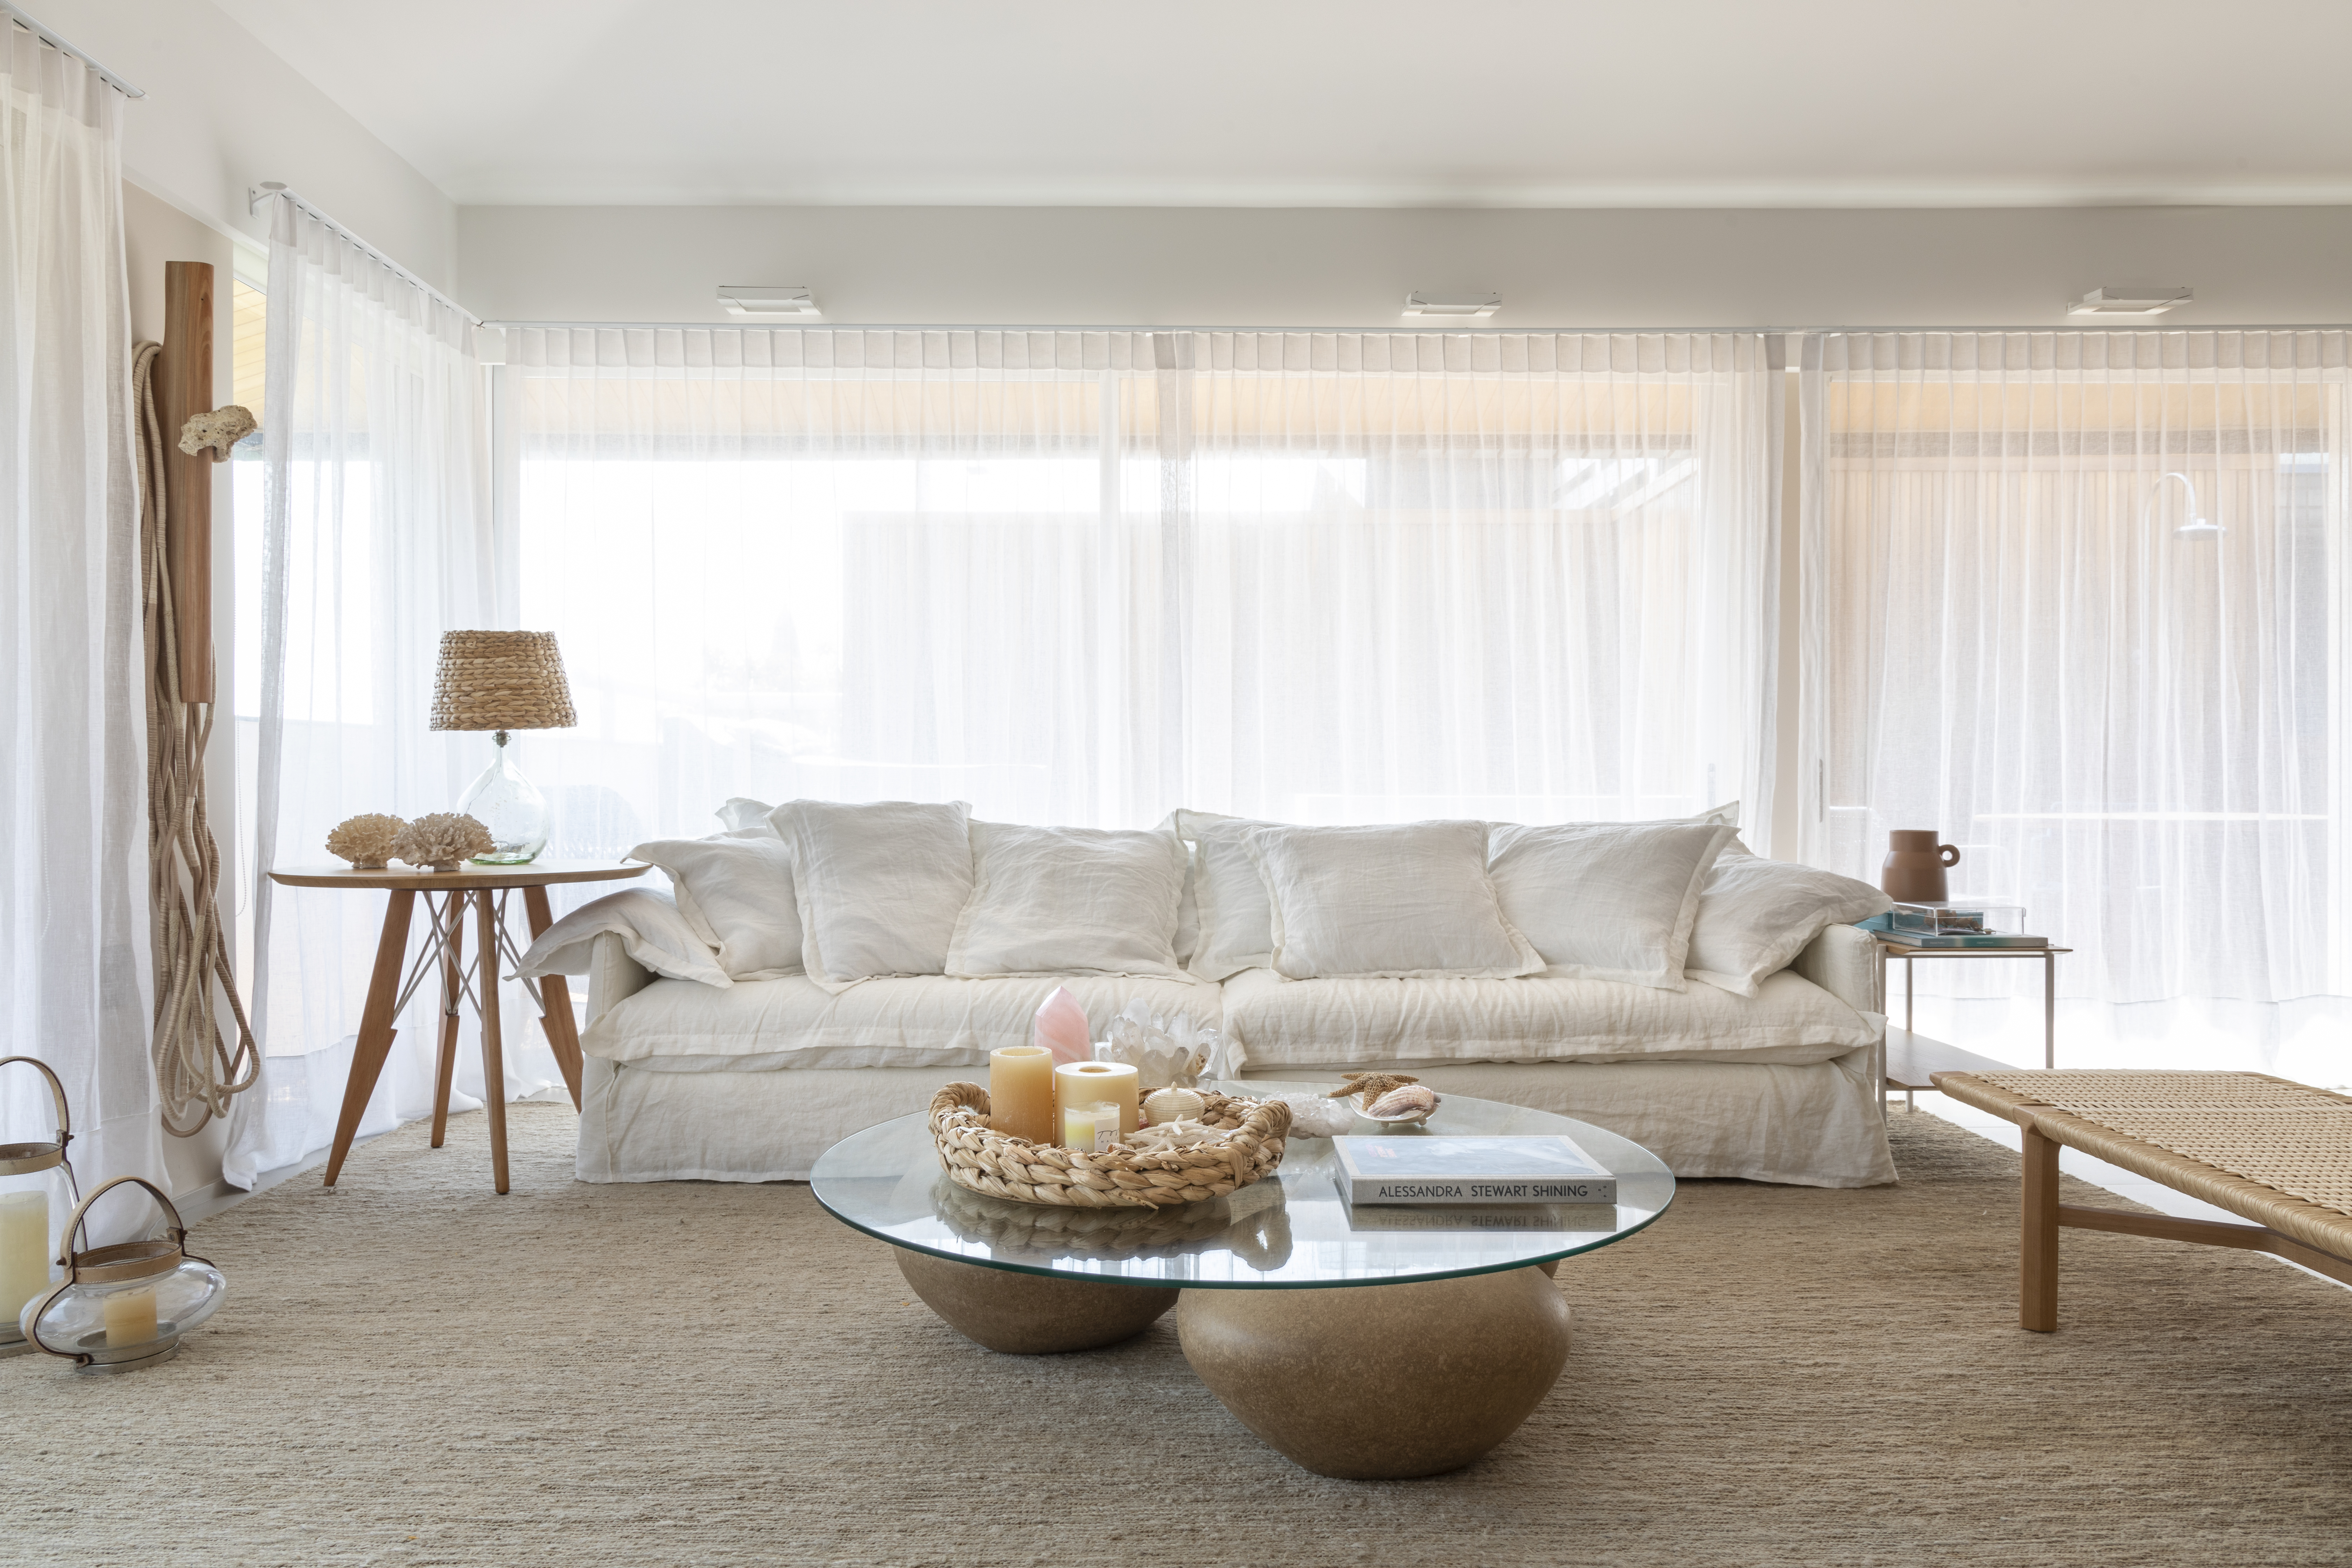 Sala de estar com tapete bege, sofá branco, cortina branca e mesa de centro com tampo de vidro.